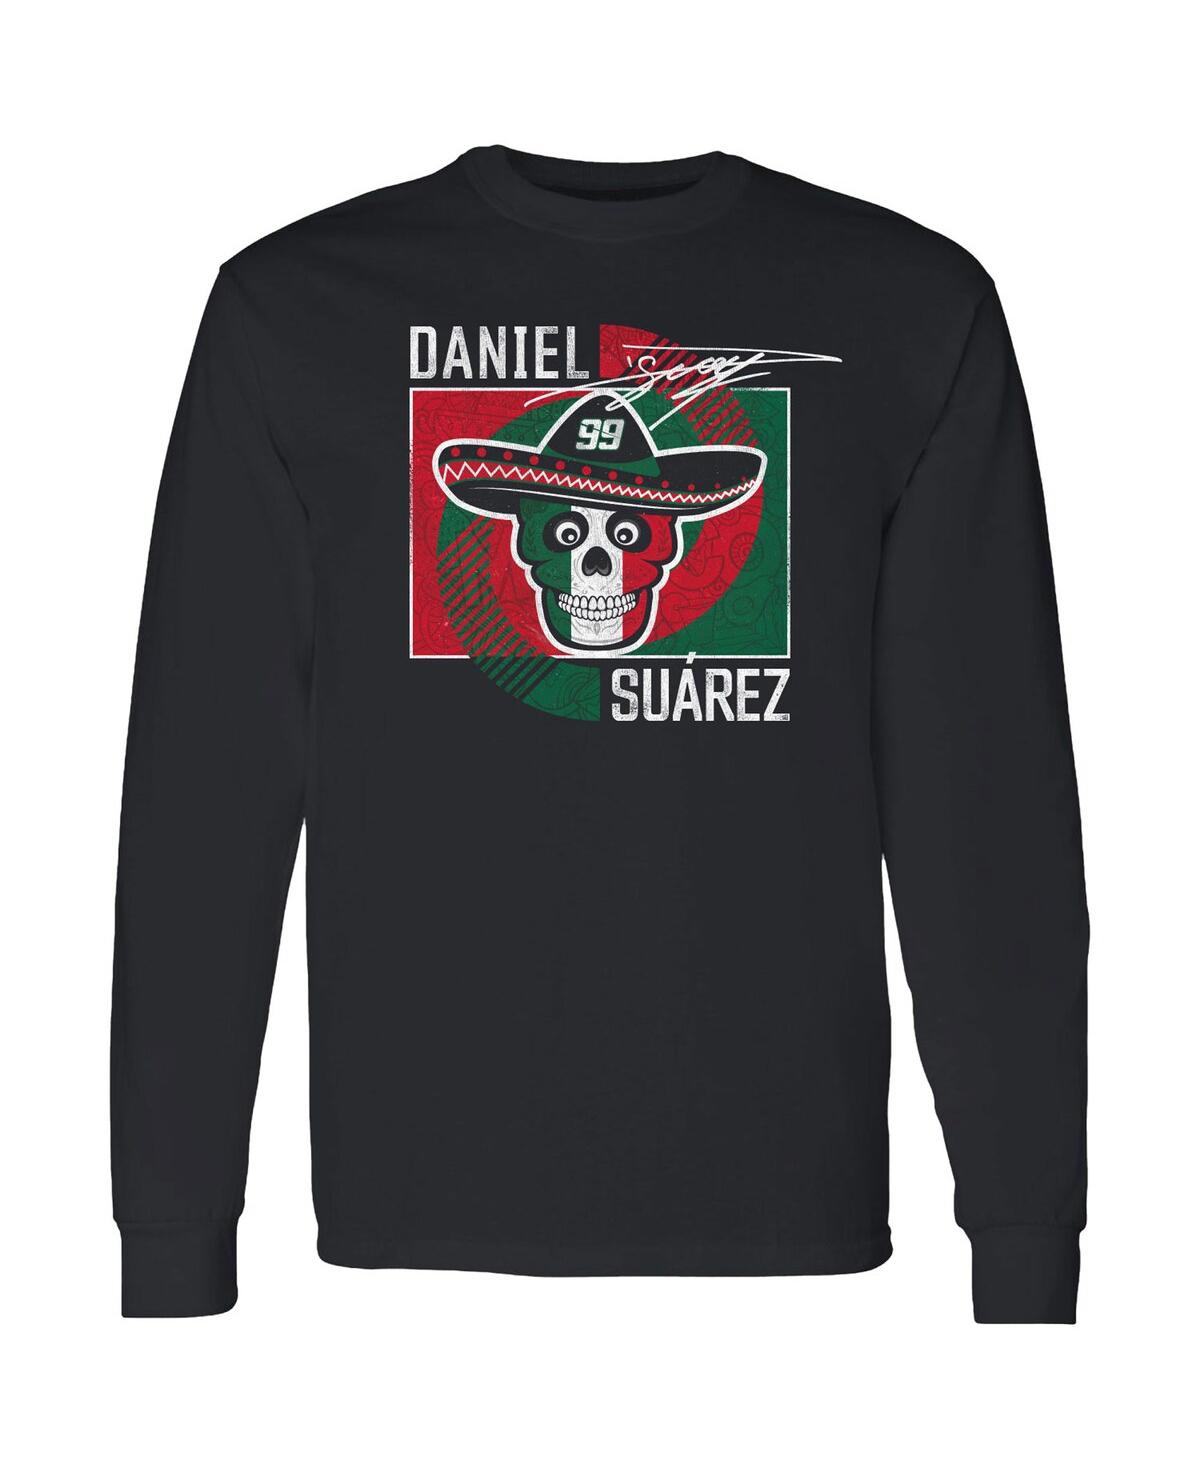 Shop Trackhouse Racing Team Collection Men's  Black Daniel Suarez Vivo Long Sleeve T-shirt